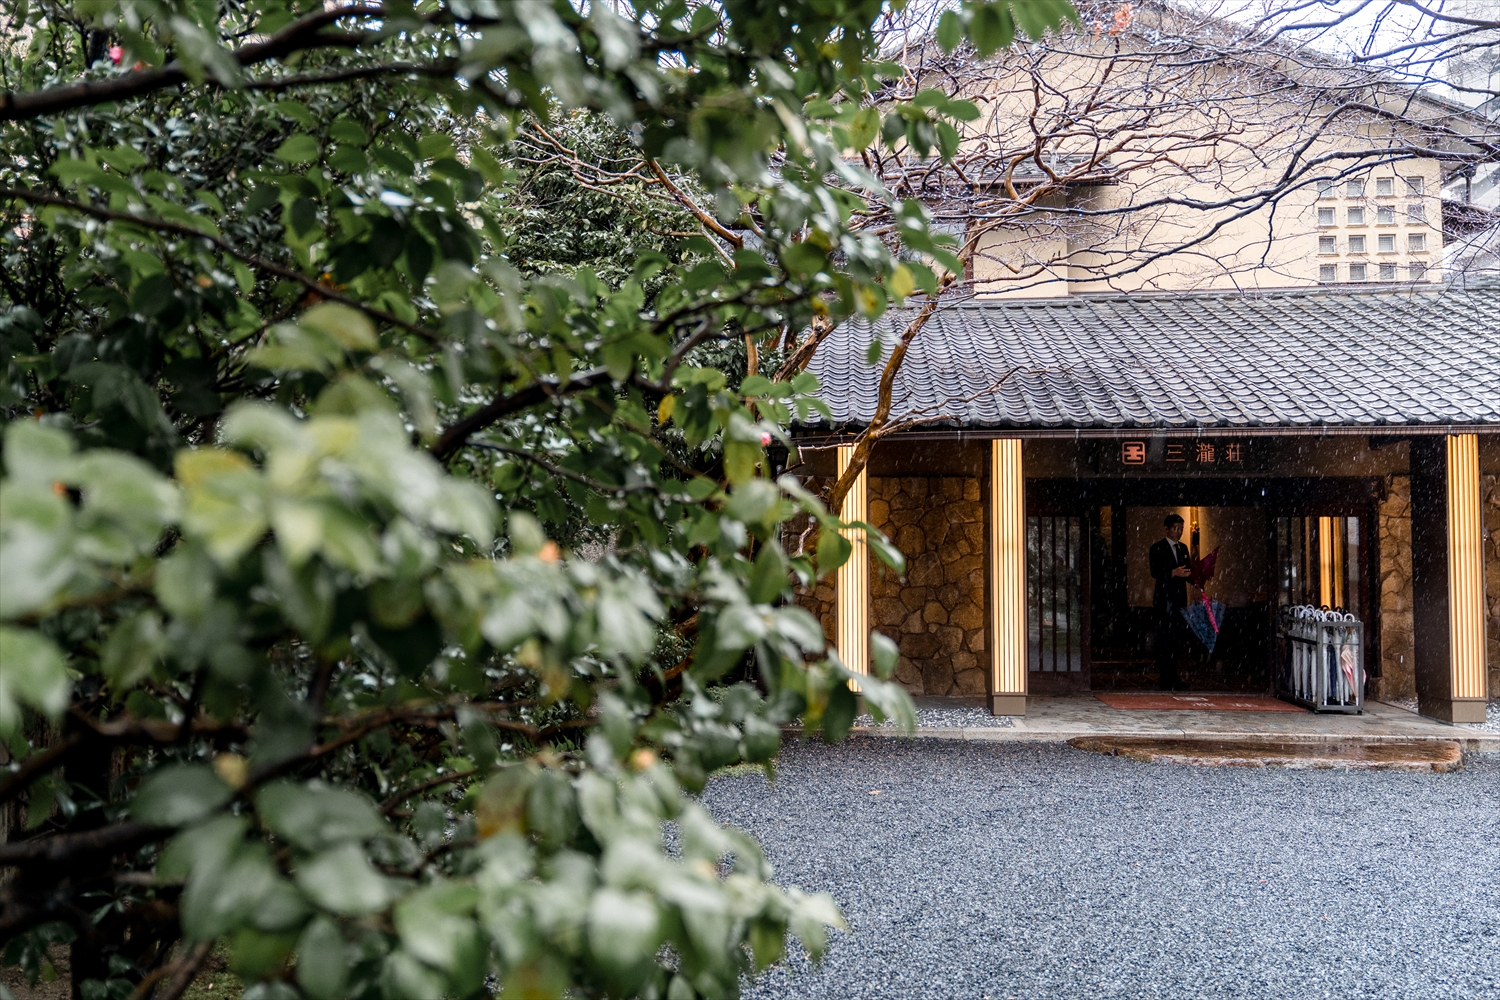 神様の涙 広島三瀧荘での結婚式写真撮影 結婚式ビデオ撮影 写真撮影なら月山映像へ 大阪 神戸 京都